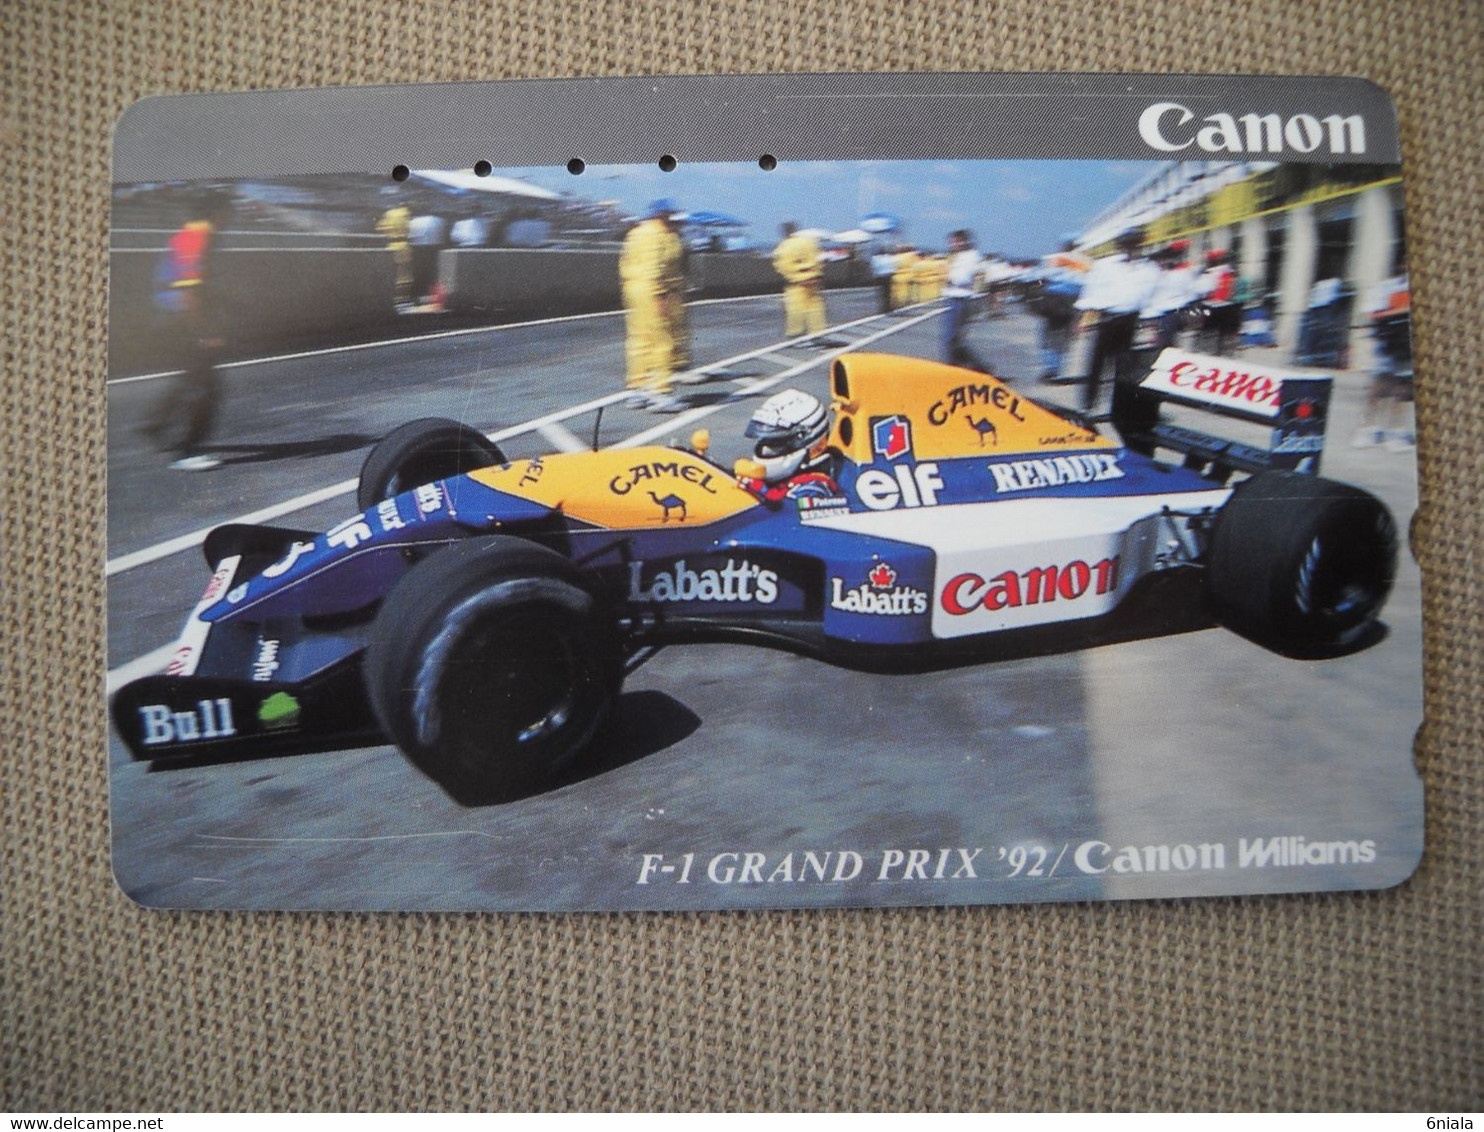 6876 Télécarte Collection  VOITURE Formule1 GRAND PRIX 92  RENAULT CANON WILLIAMS (scans Recto Verso)  Carte - Voitures